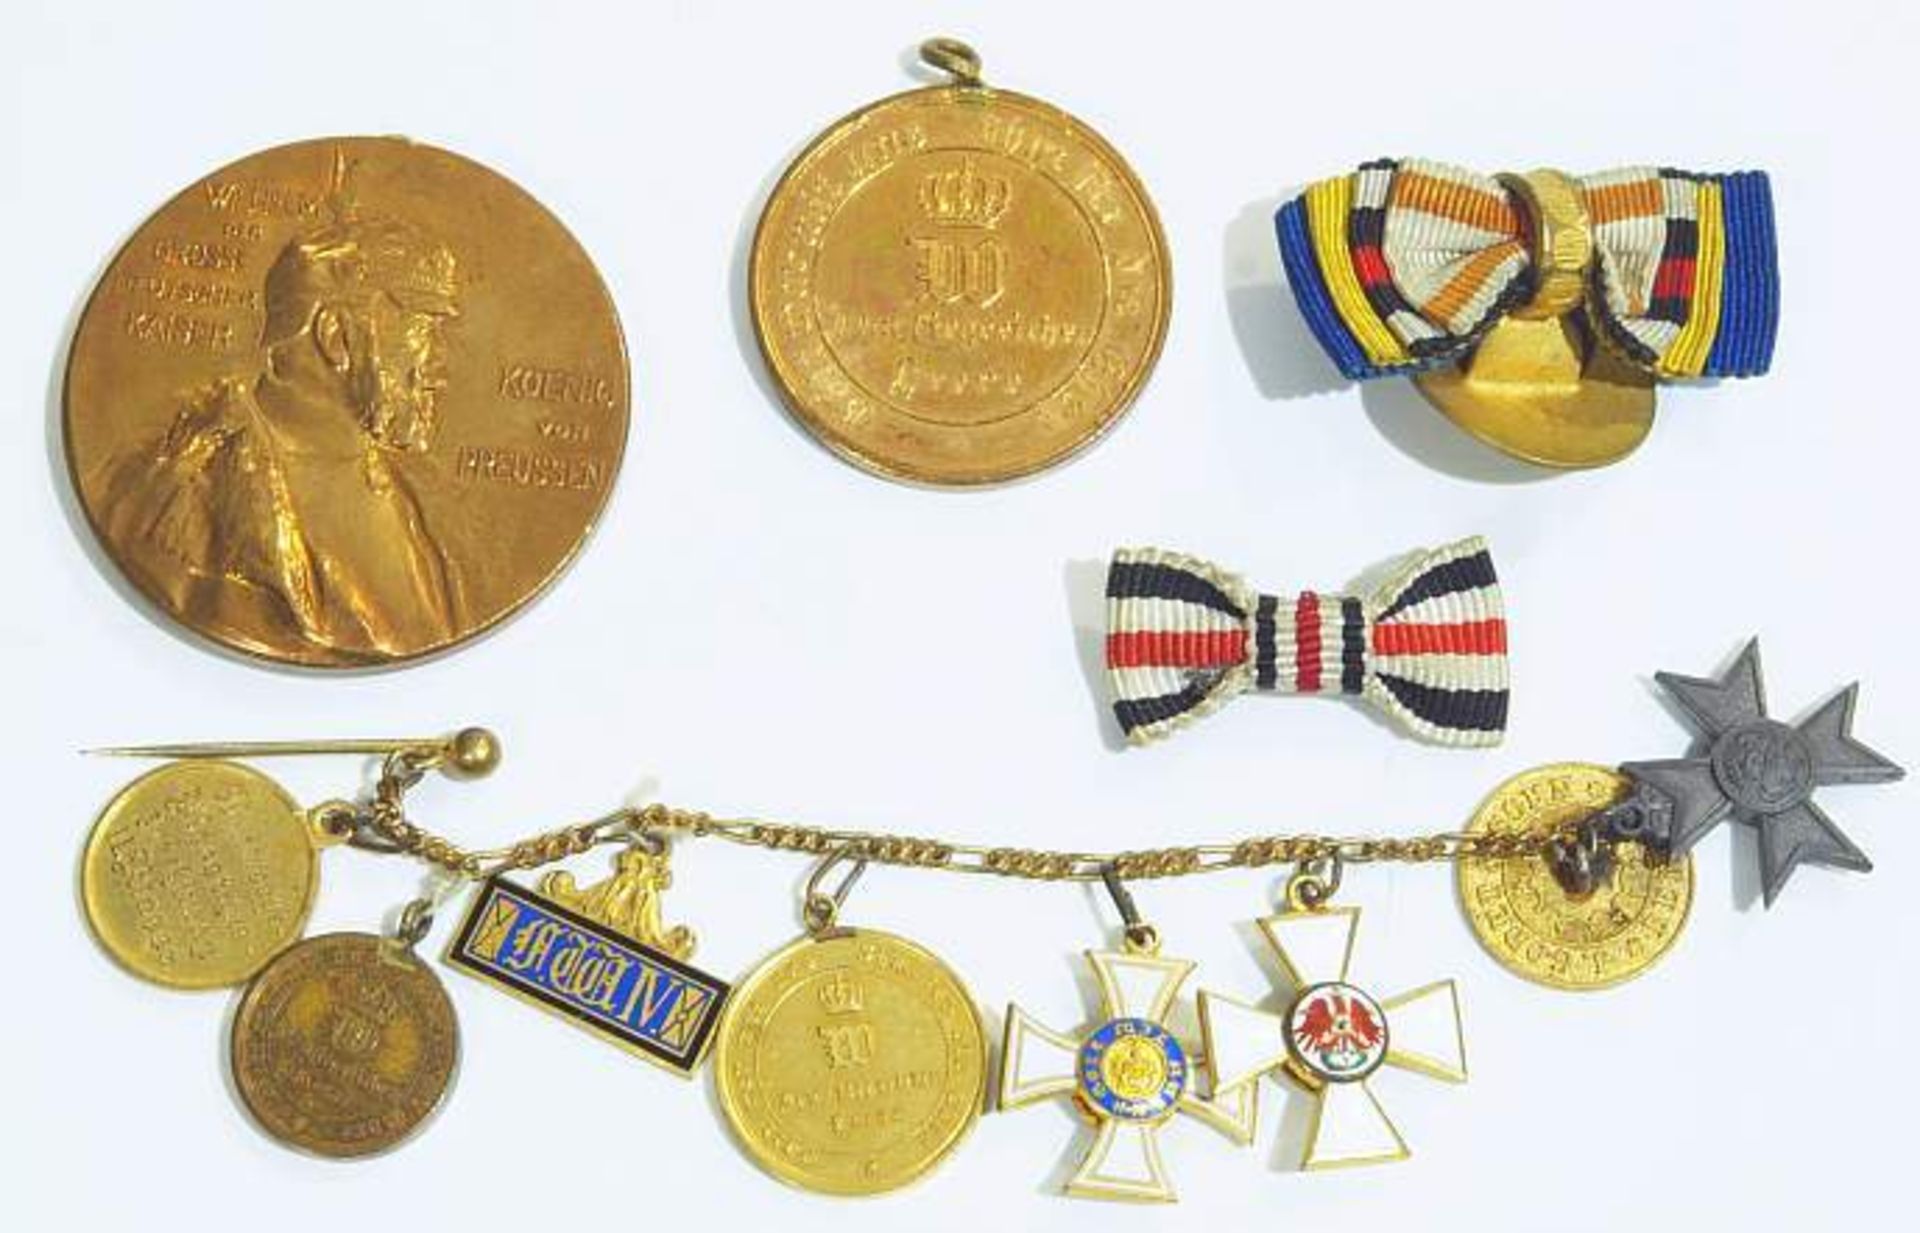 Miniaturen-Kettchen eines preußischen Offiziers.
Miniaturen-Kettchen eines preußischen Offiziers mit